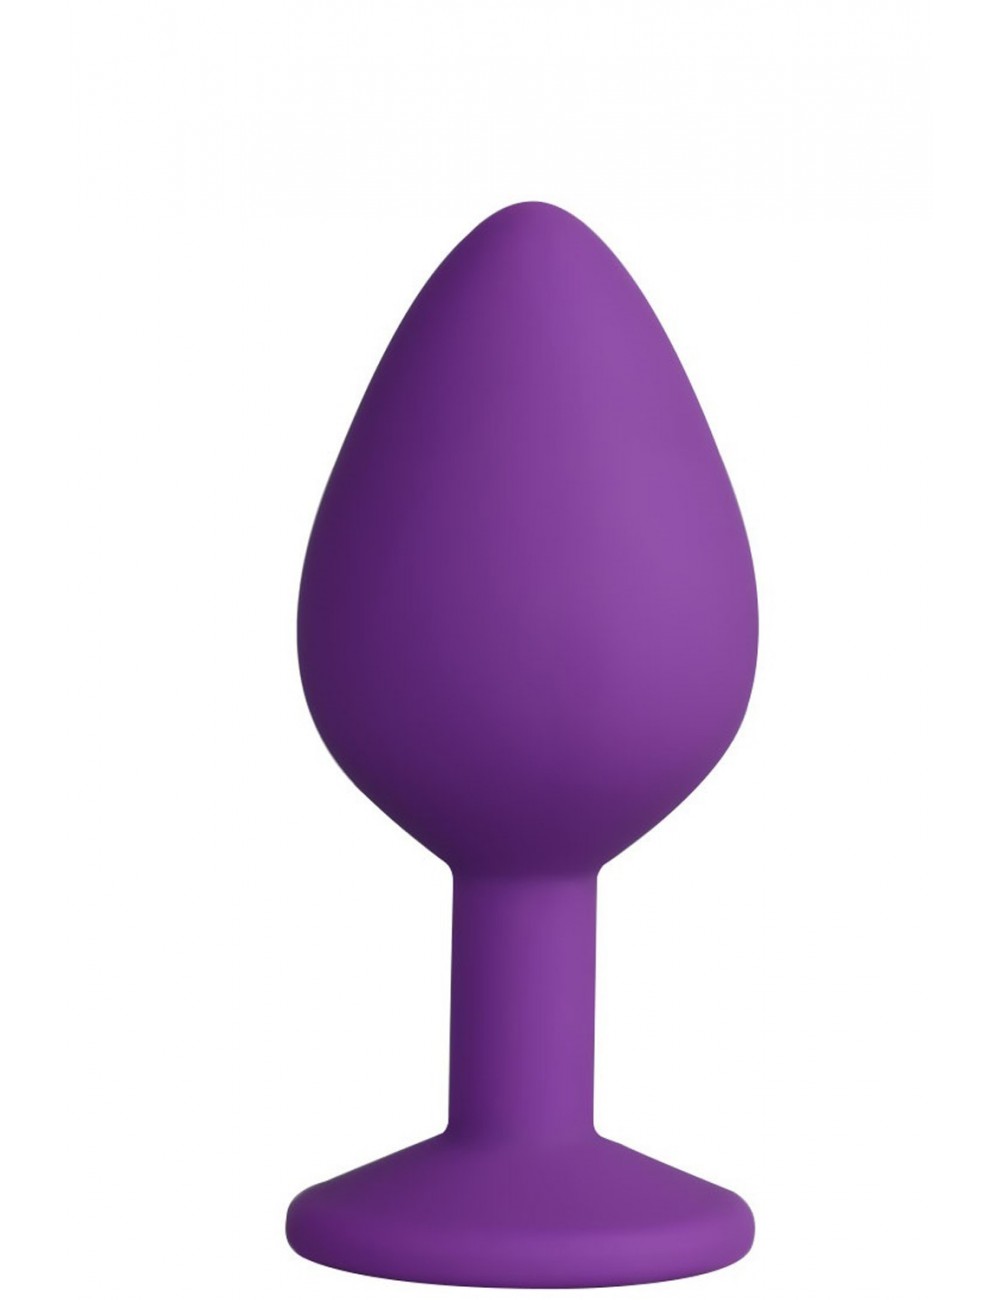 Sextoys - Godes & Plugs - Plug violet Small en silicone médical avec bijou à facettes - Dreamy Toys